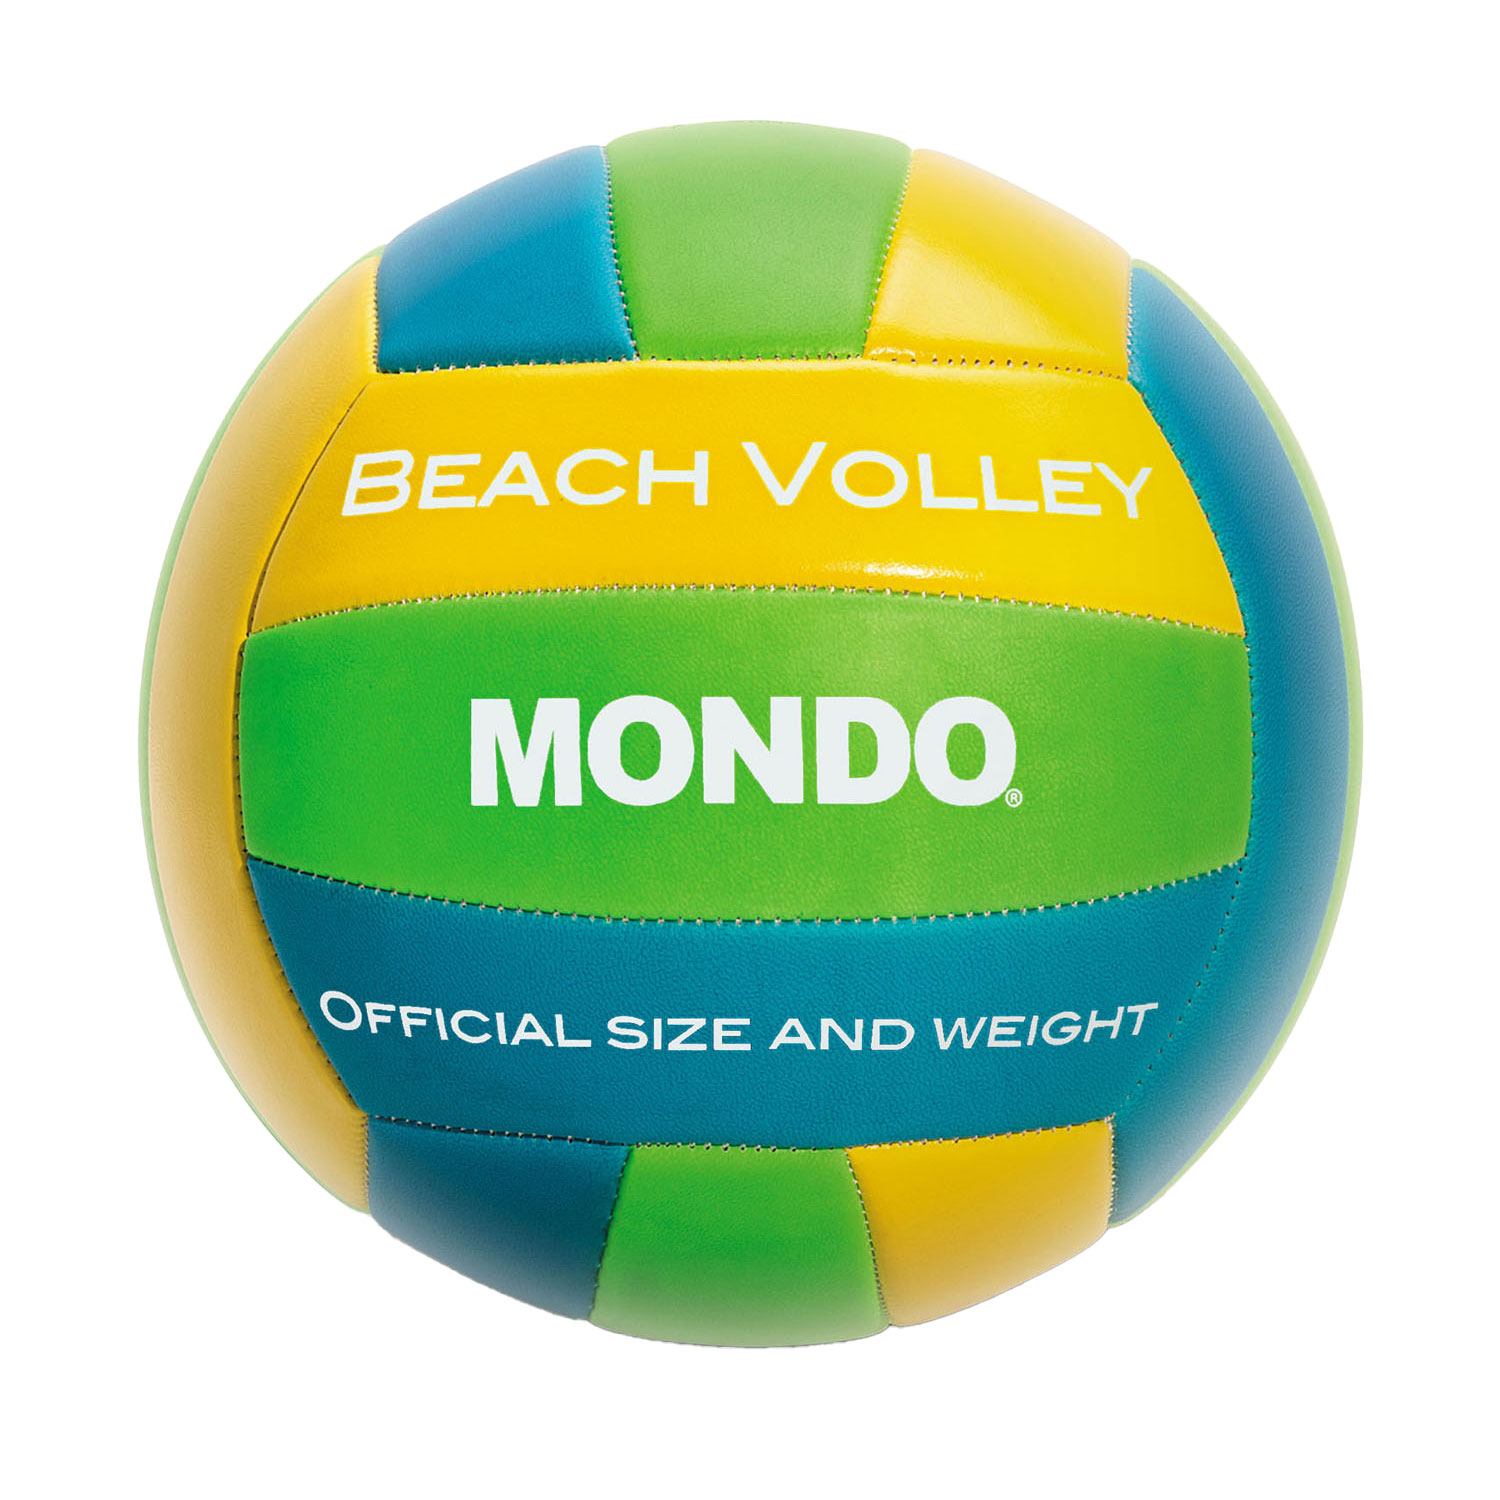 Mondo Ballon de beach-volley Mondo, 21 cm